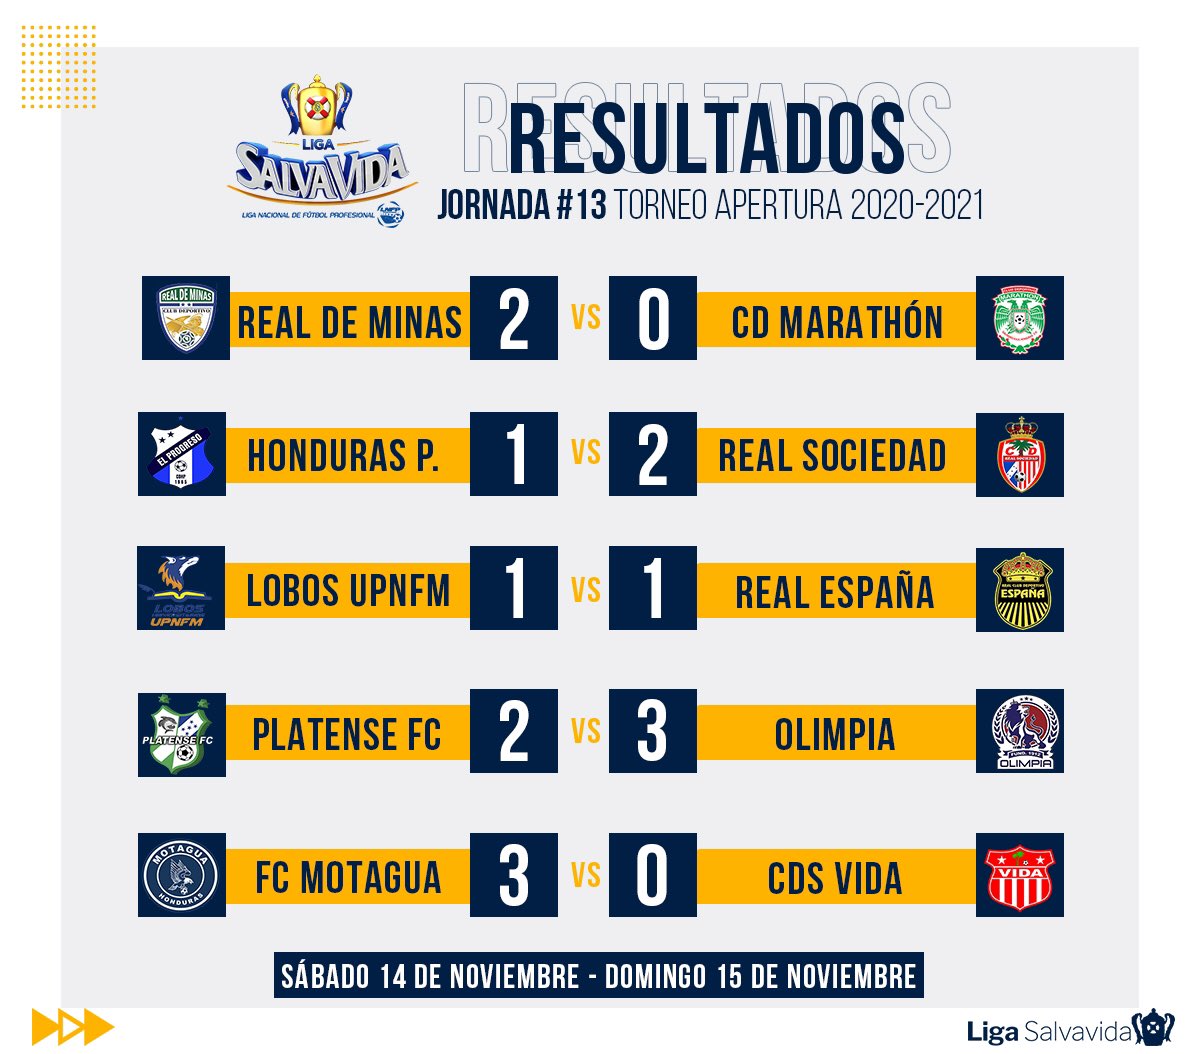 Twitter 上的 Liga Betcris de Honduras："¡RESULTADOS!⚽🔥 Estos fueron resultados completos de la #Jornada13 del #TorneoApertura. Coméntanos como le fue a tu equipo en esta #Jornada13. #LigaNacional https://t.co/fR9hPygiLw ...